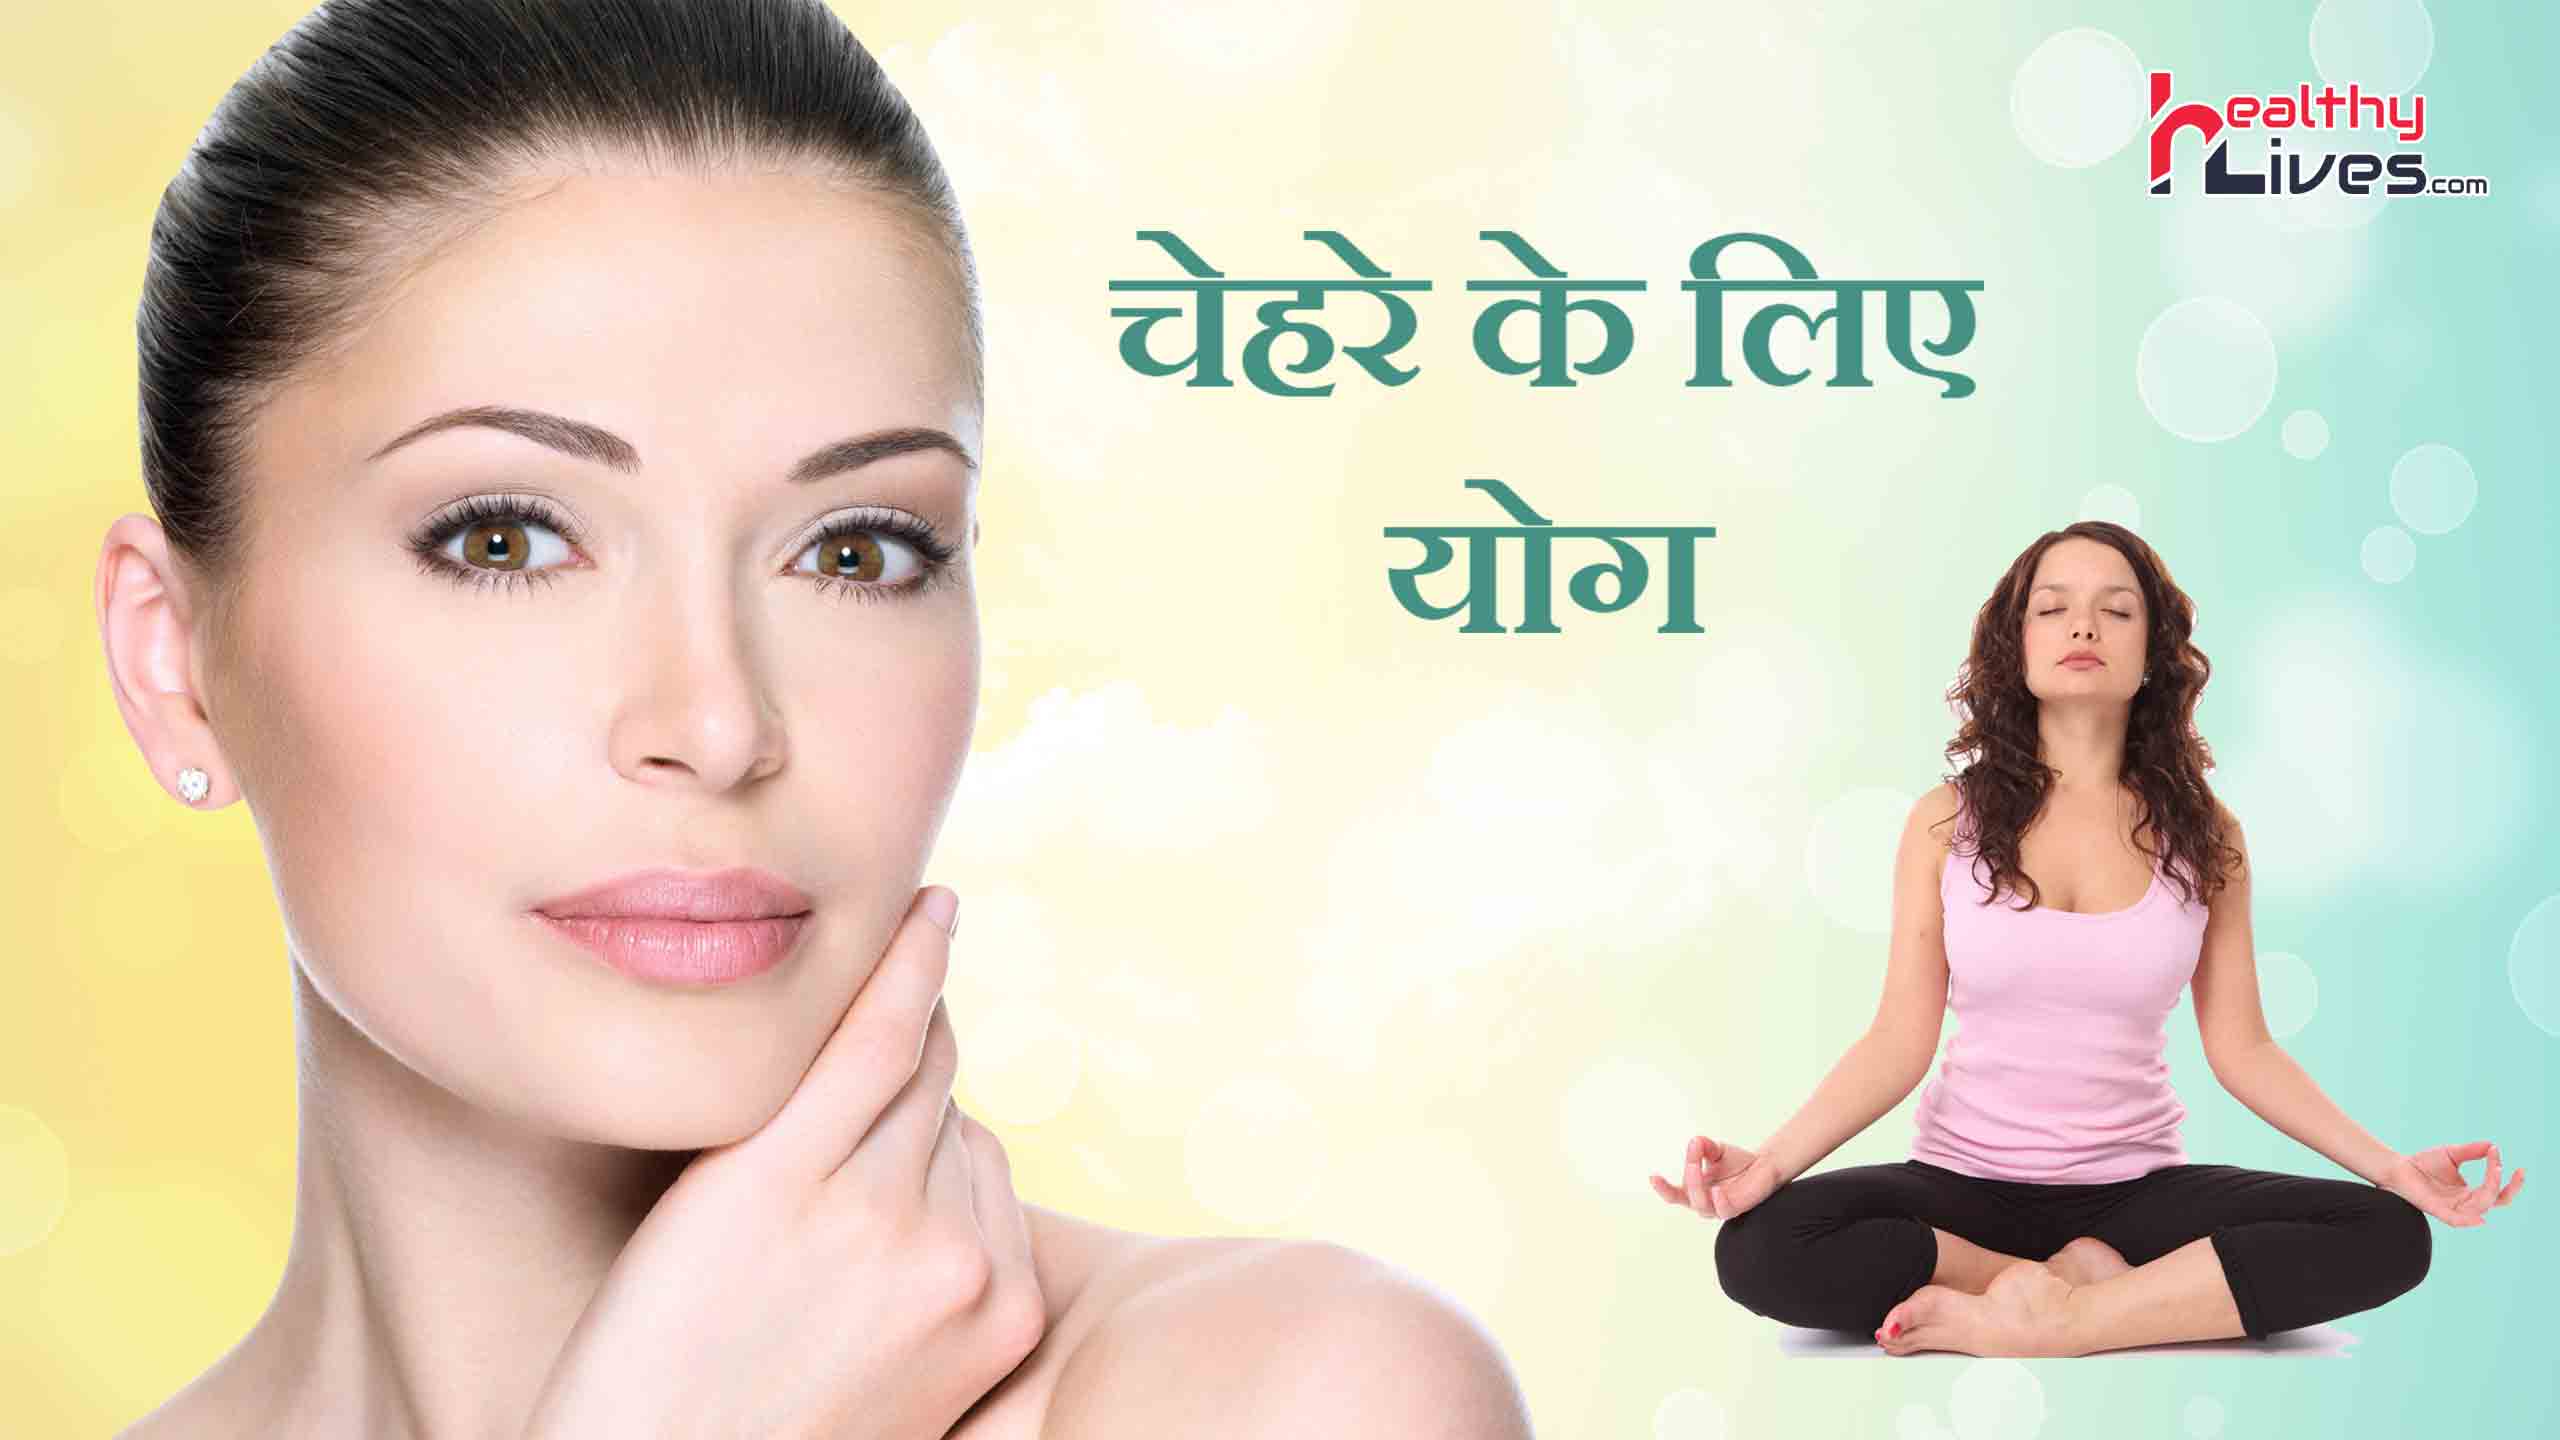 Face Yoga in Hindi: अपने चेहरे की खूबसूरती बढ़ाने के लिए करे फेस योगा